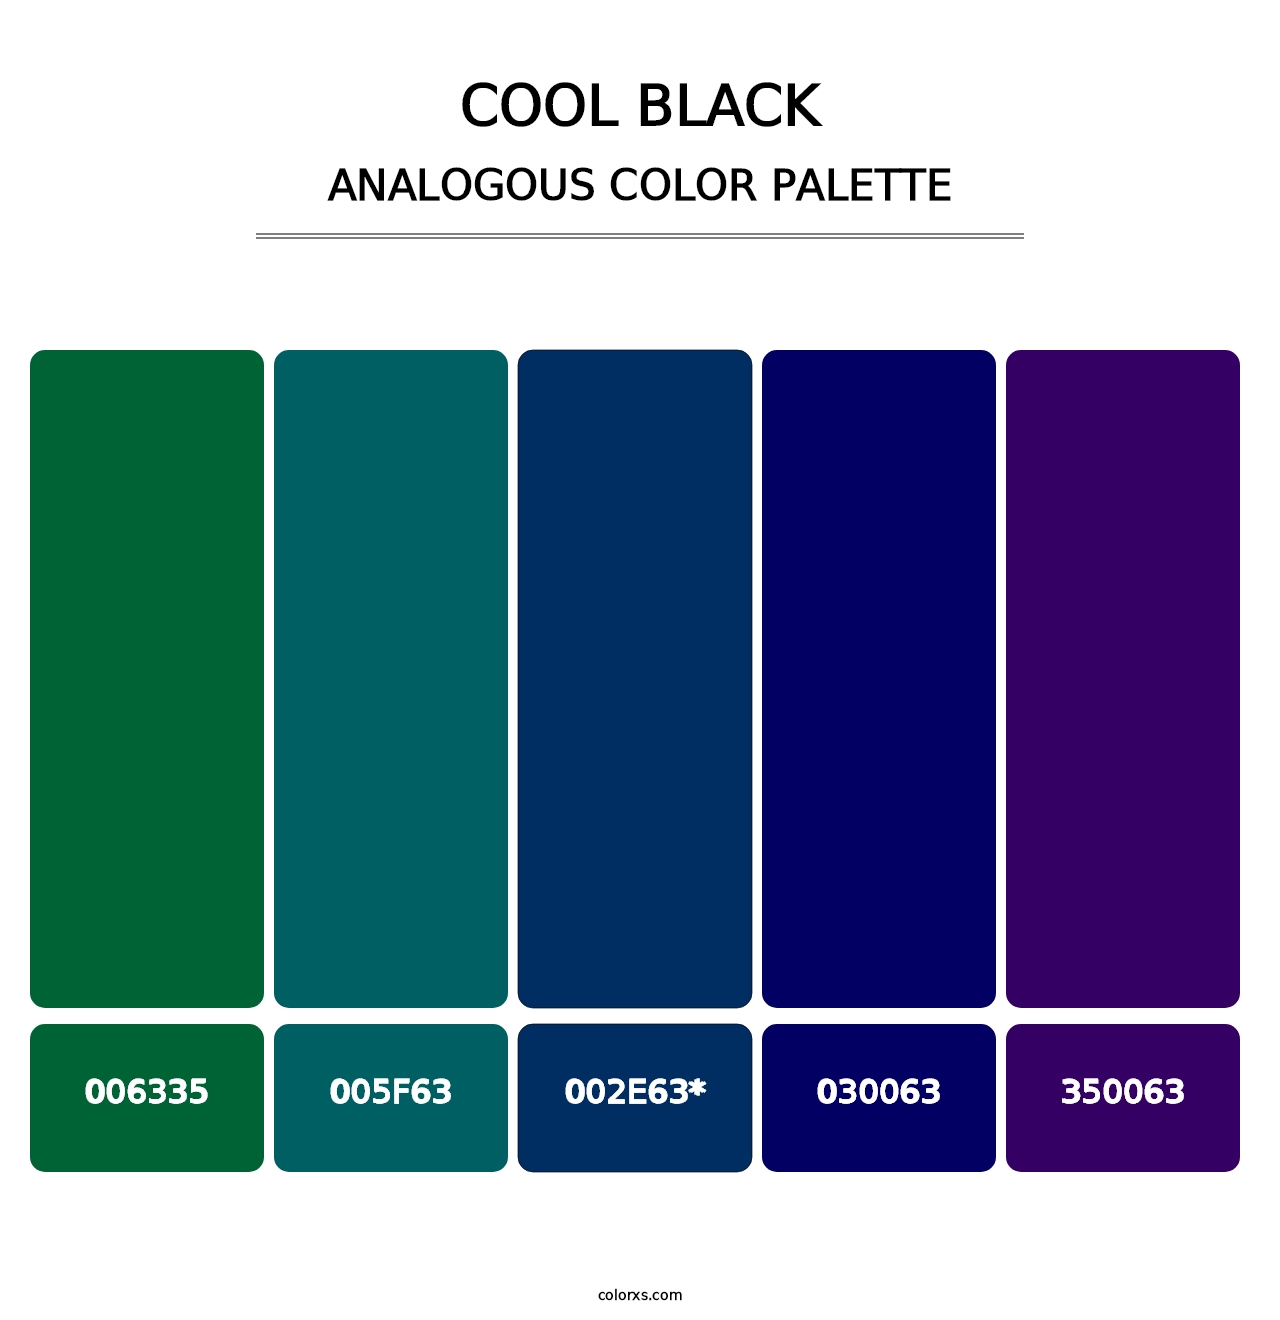 Cool Black - Analogous Color Palette